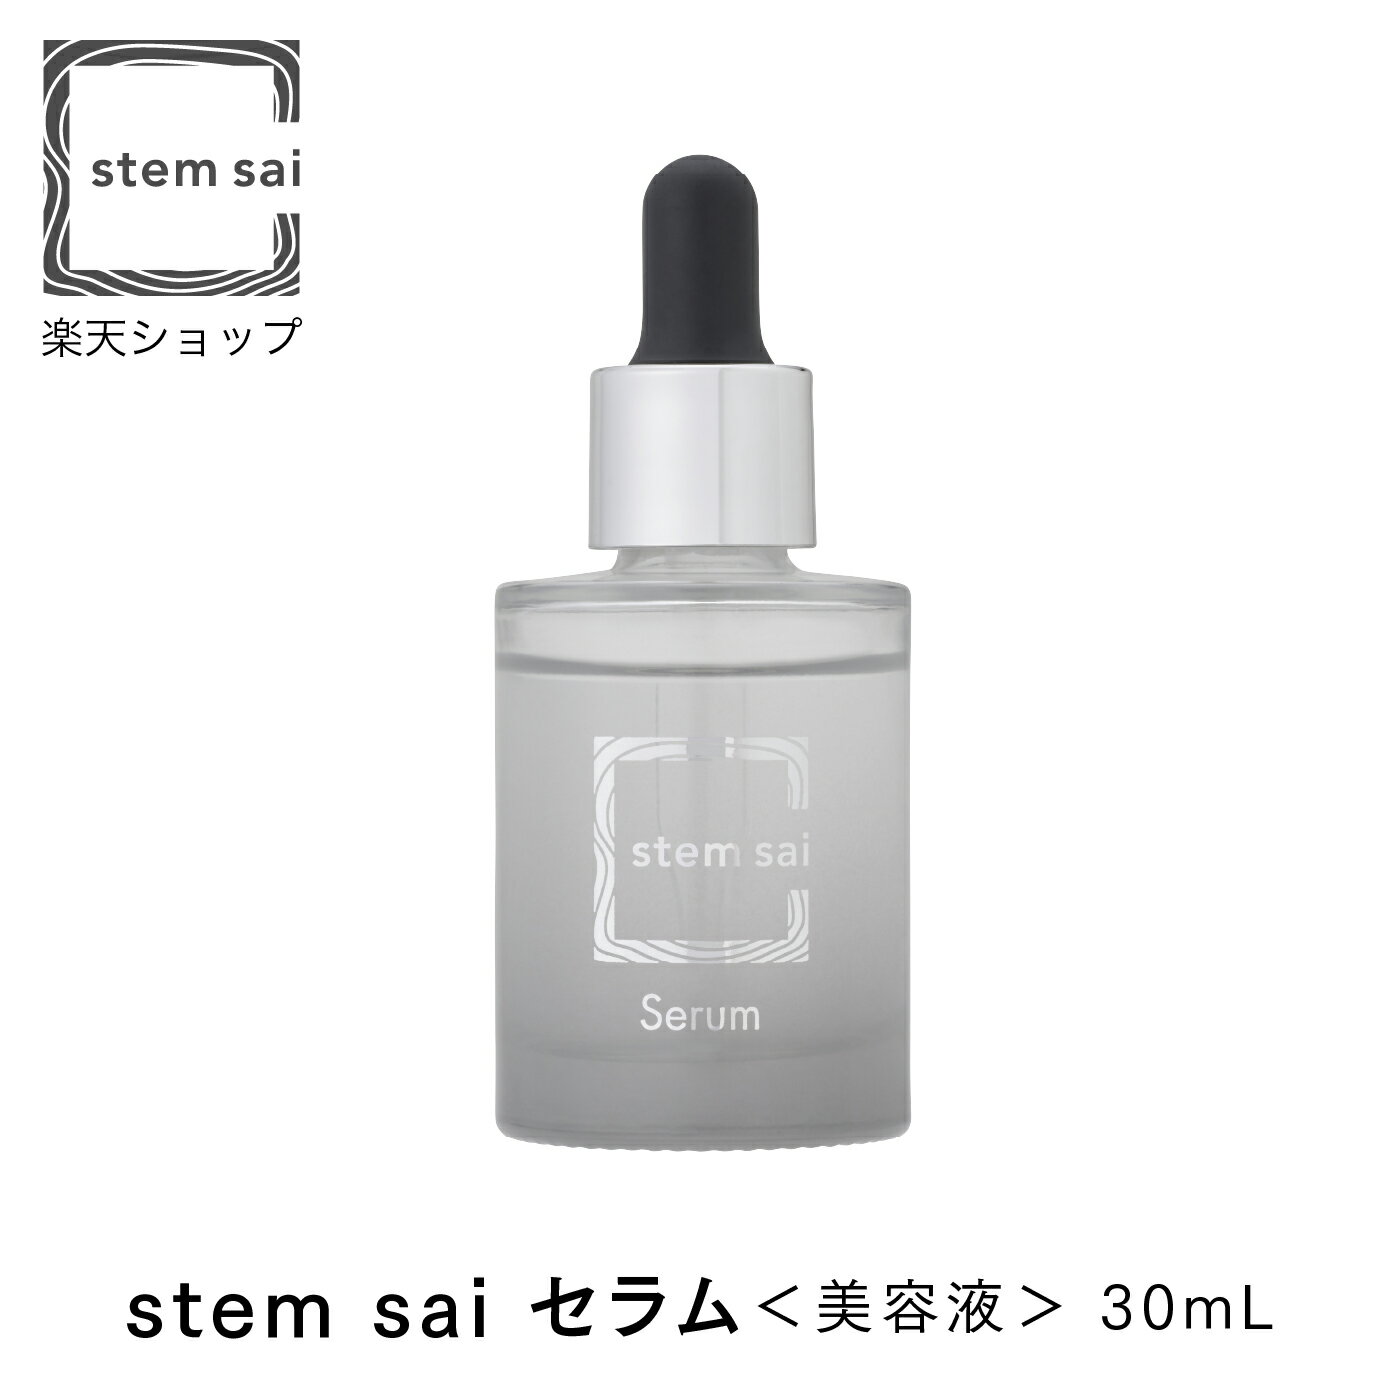 stem sai セラム ナチュラル ヒト脂肪間質細胞エクソソーム ゲットウ葉エキス ムナプシス 日本製 ステムサイ 美容液